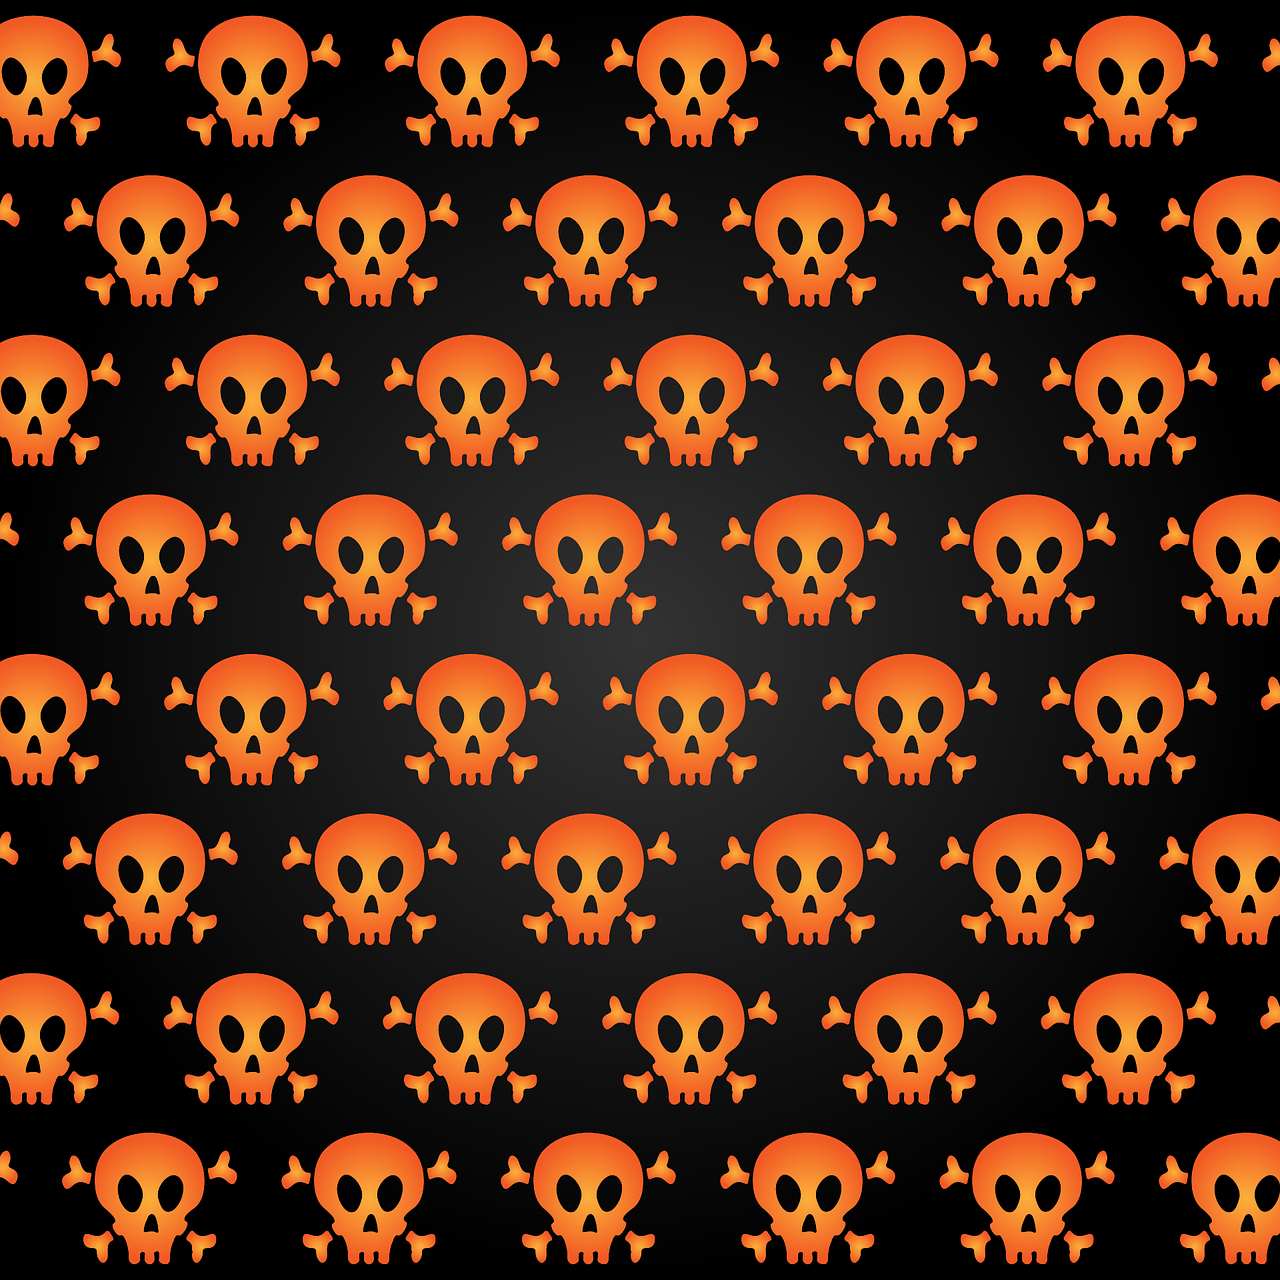 a pattern of skulls and bones on a black background, orange color, 4 k hd wallpaper illustration, sprite sheet, made with illustrator